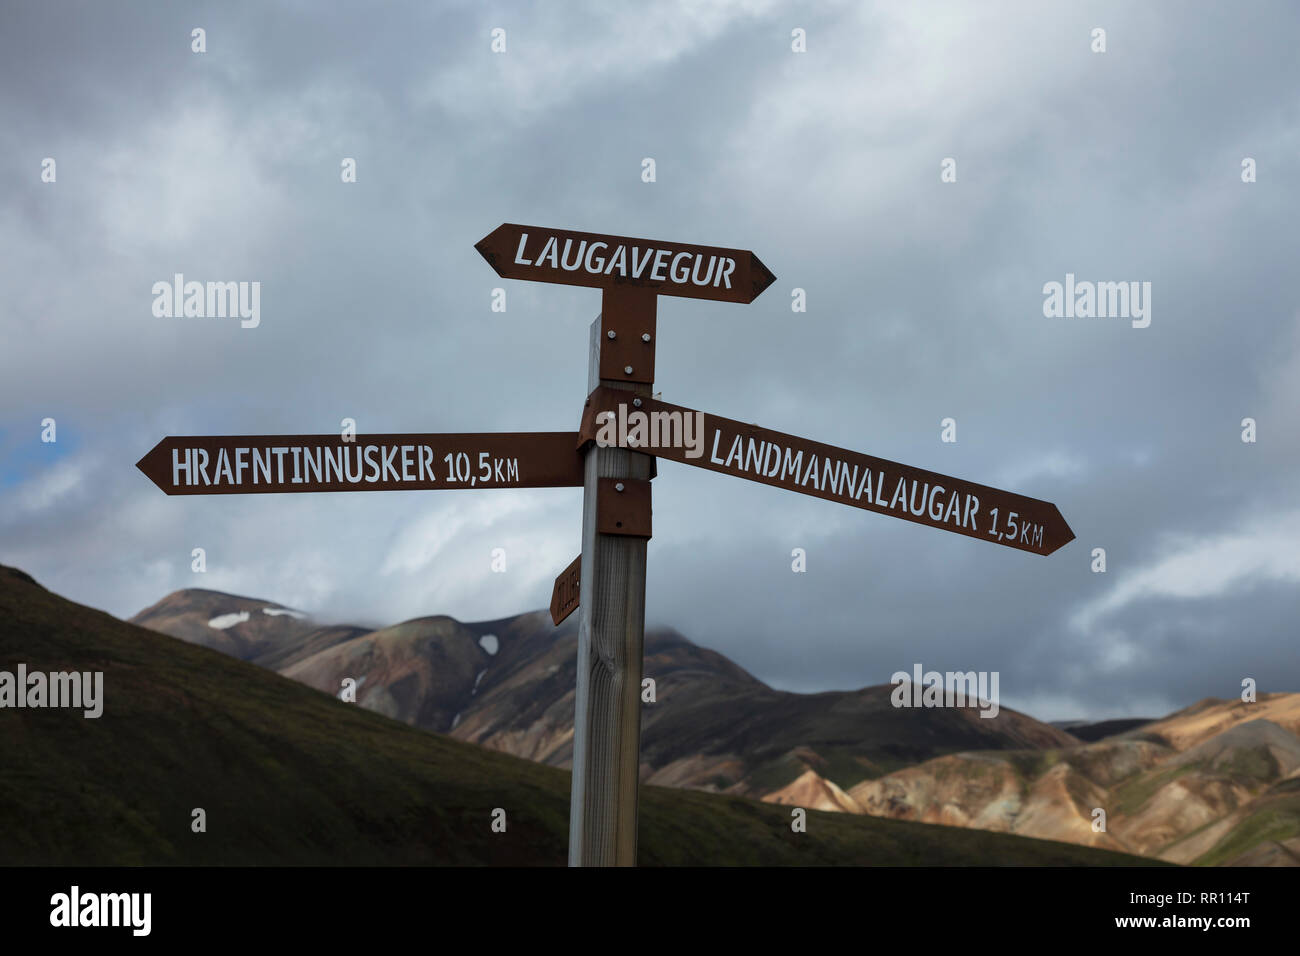 Panneau de randonnée sentier près de Laugavegur marquant le landmannalaugar. Hauts Plateaux du centre, Sudhurland, Islande. Banque D'Images